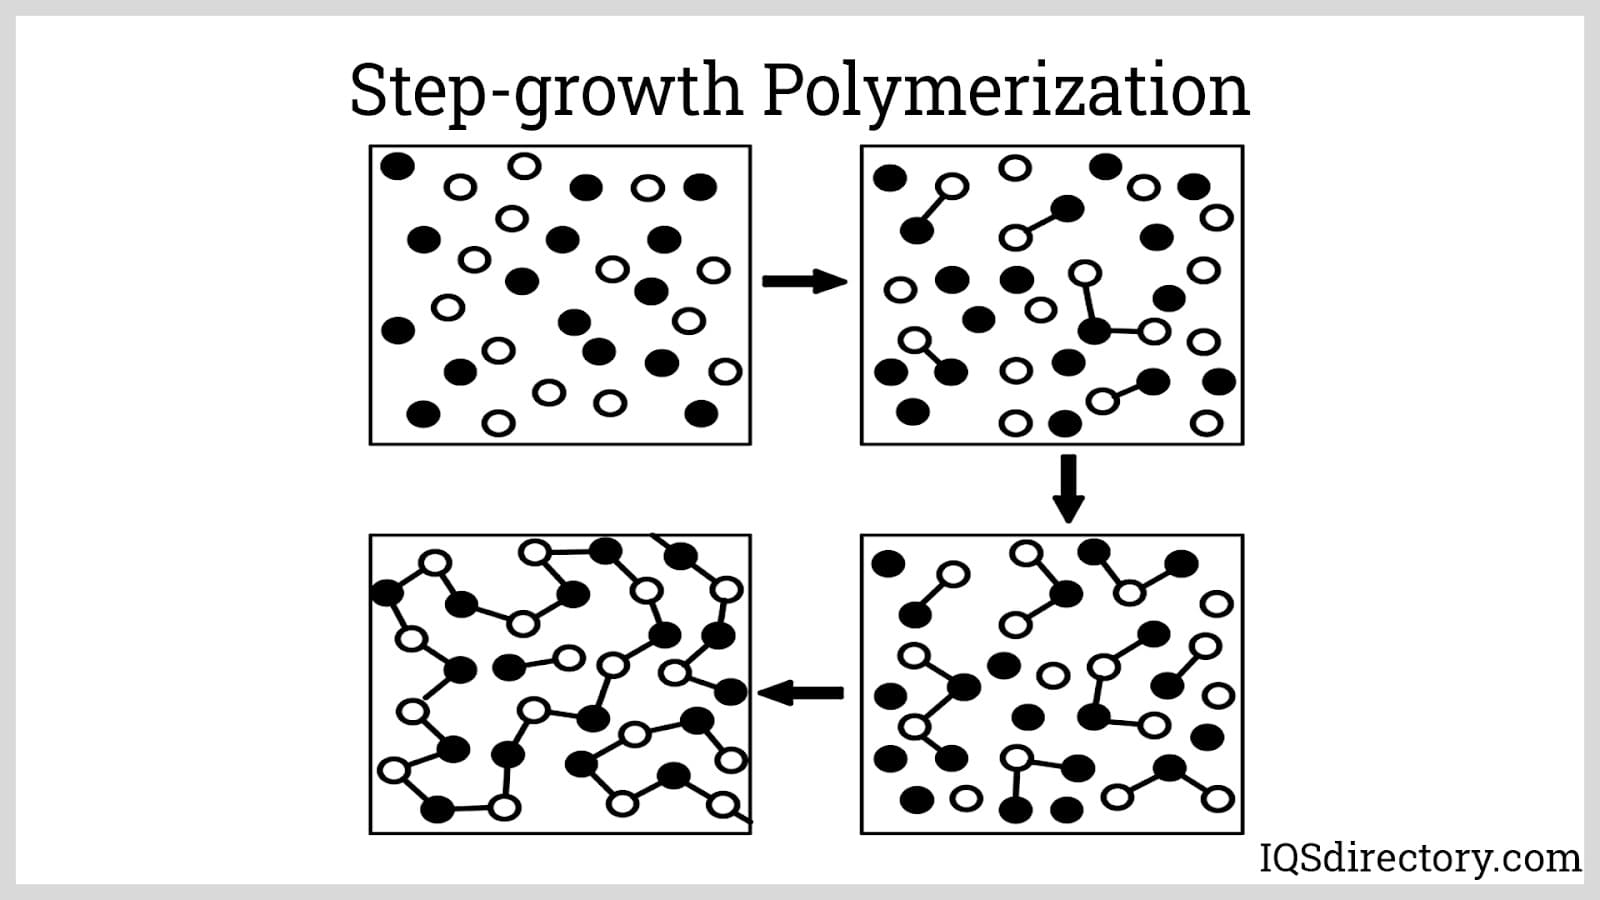 Step-growth Polymerization